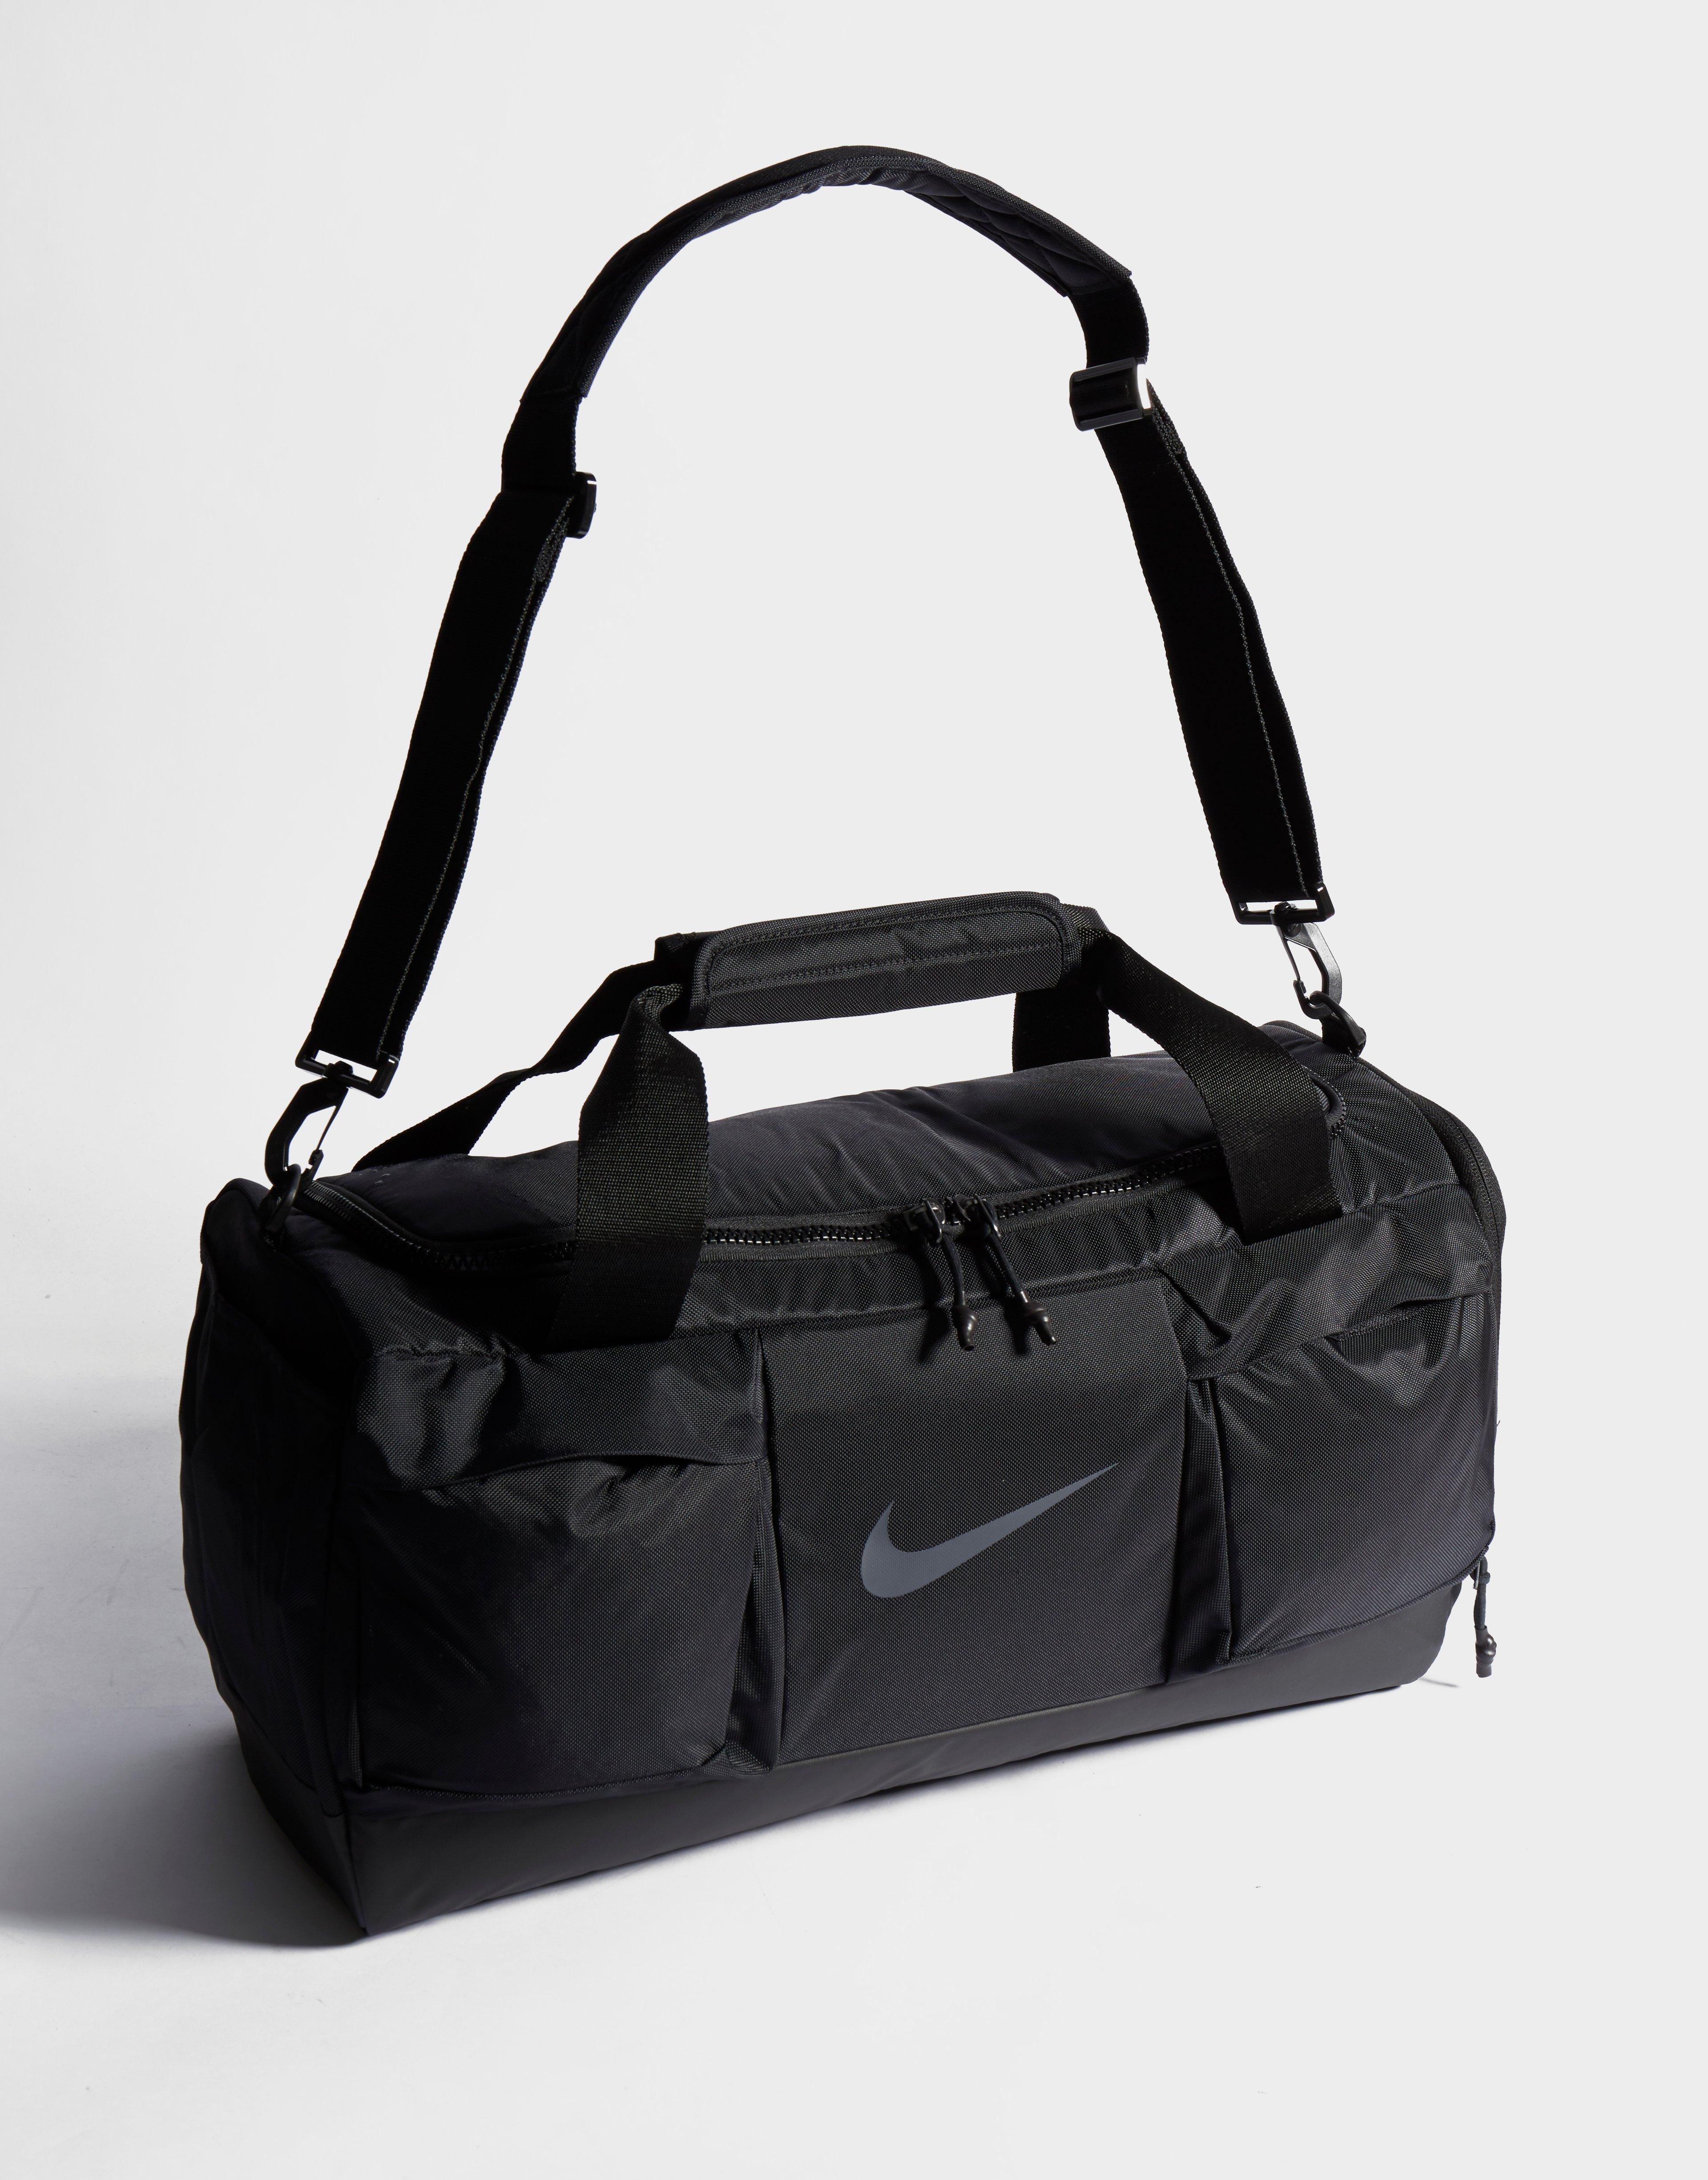 black nike sports bag